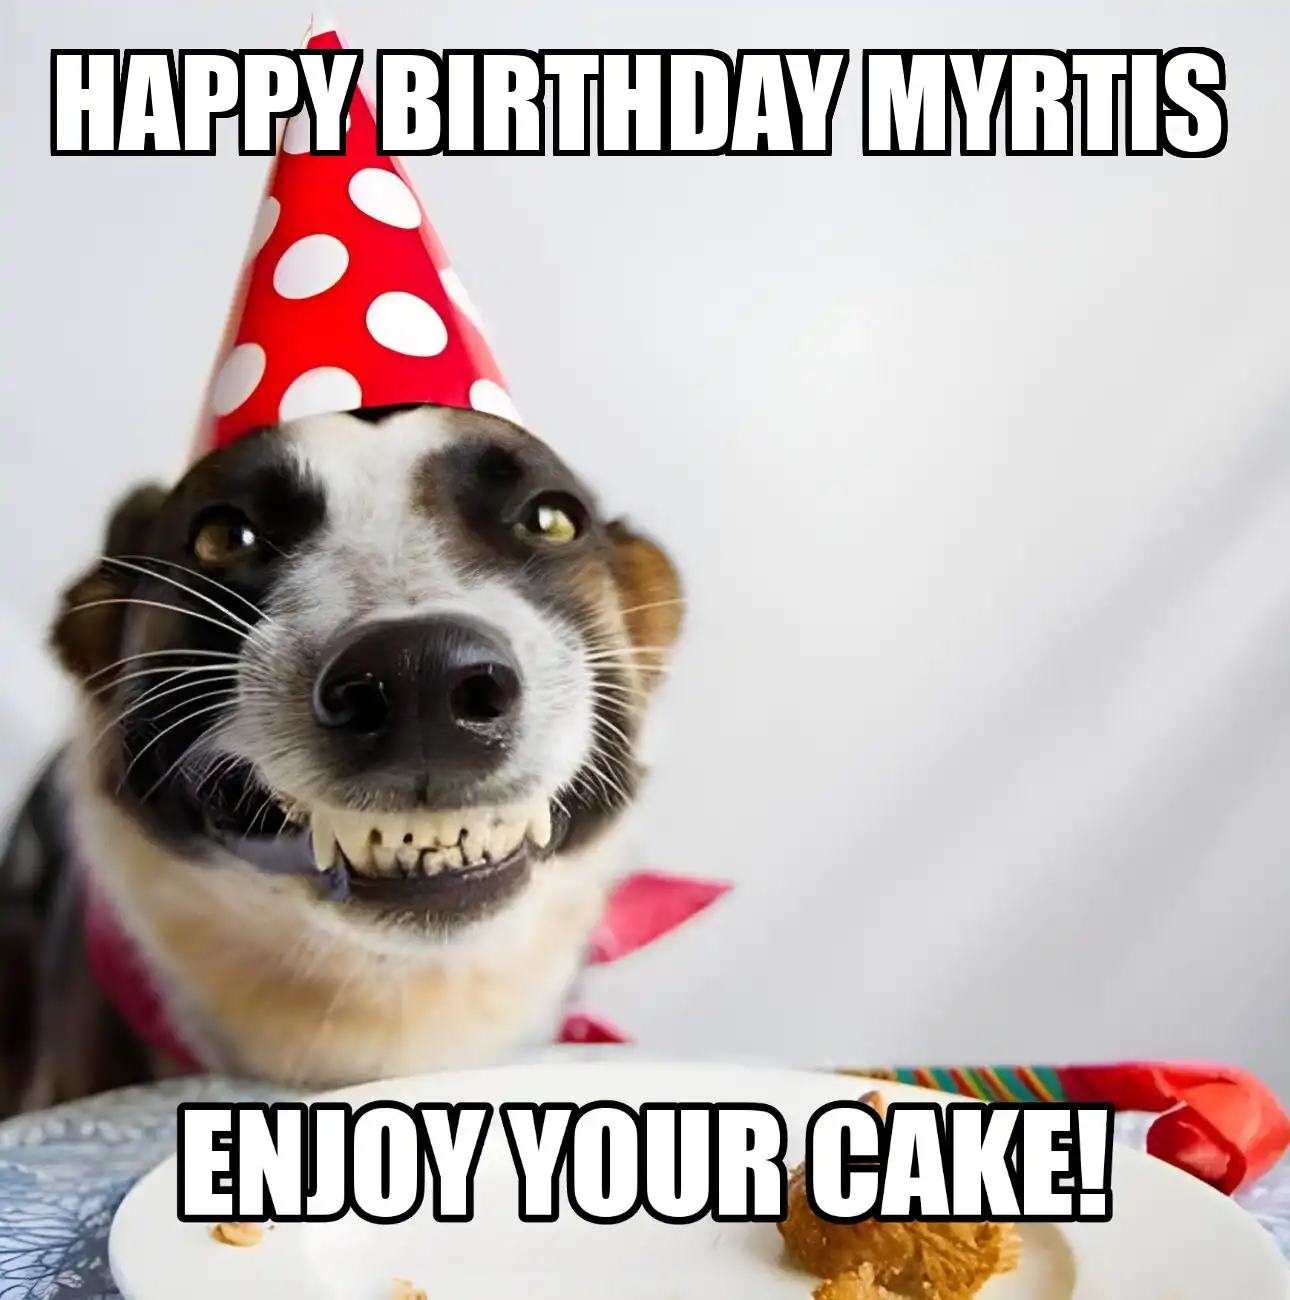 Happy Birthday Myrtis Enjoy Your Cake Dog Meme